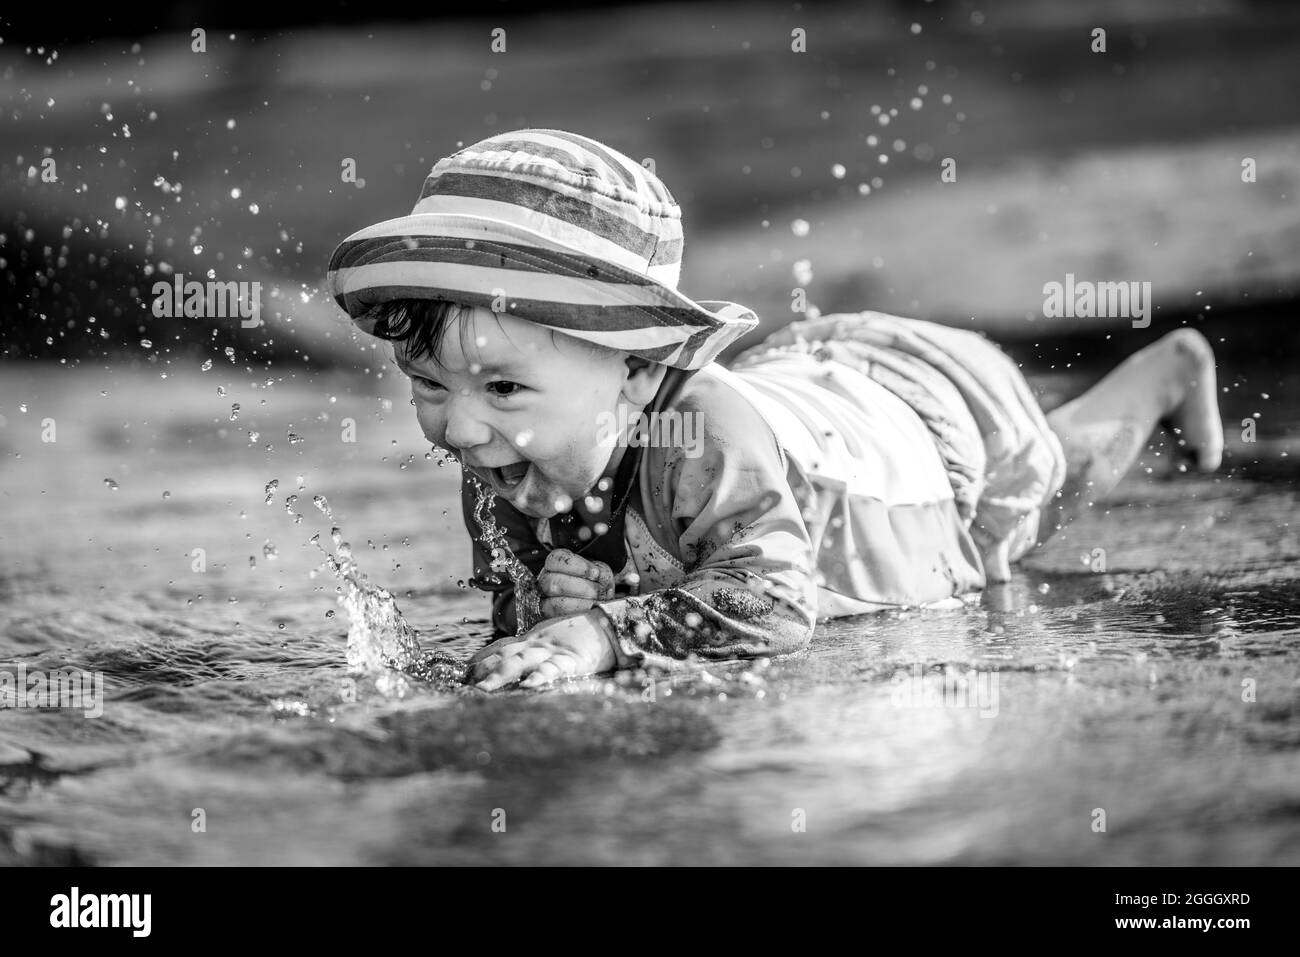 Photo en noir et blanc d'un tout-petit (petit garçon) qui rampe dans l'eau, rit et éclabousse de l'eau partout. Banque D'Images